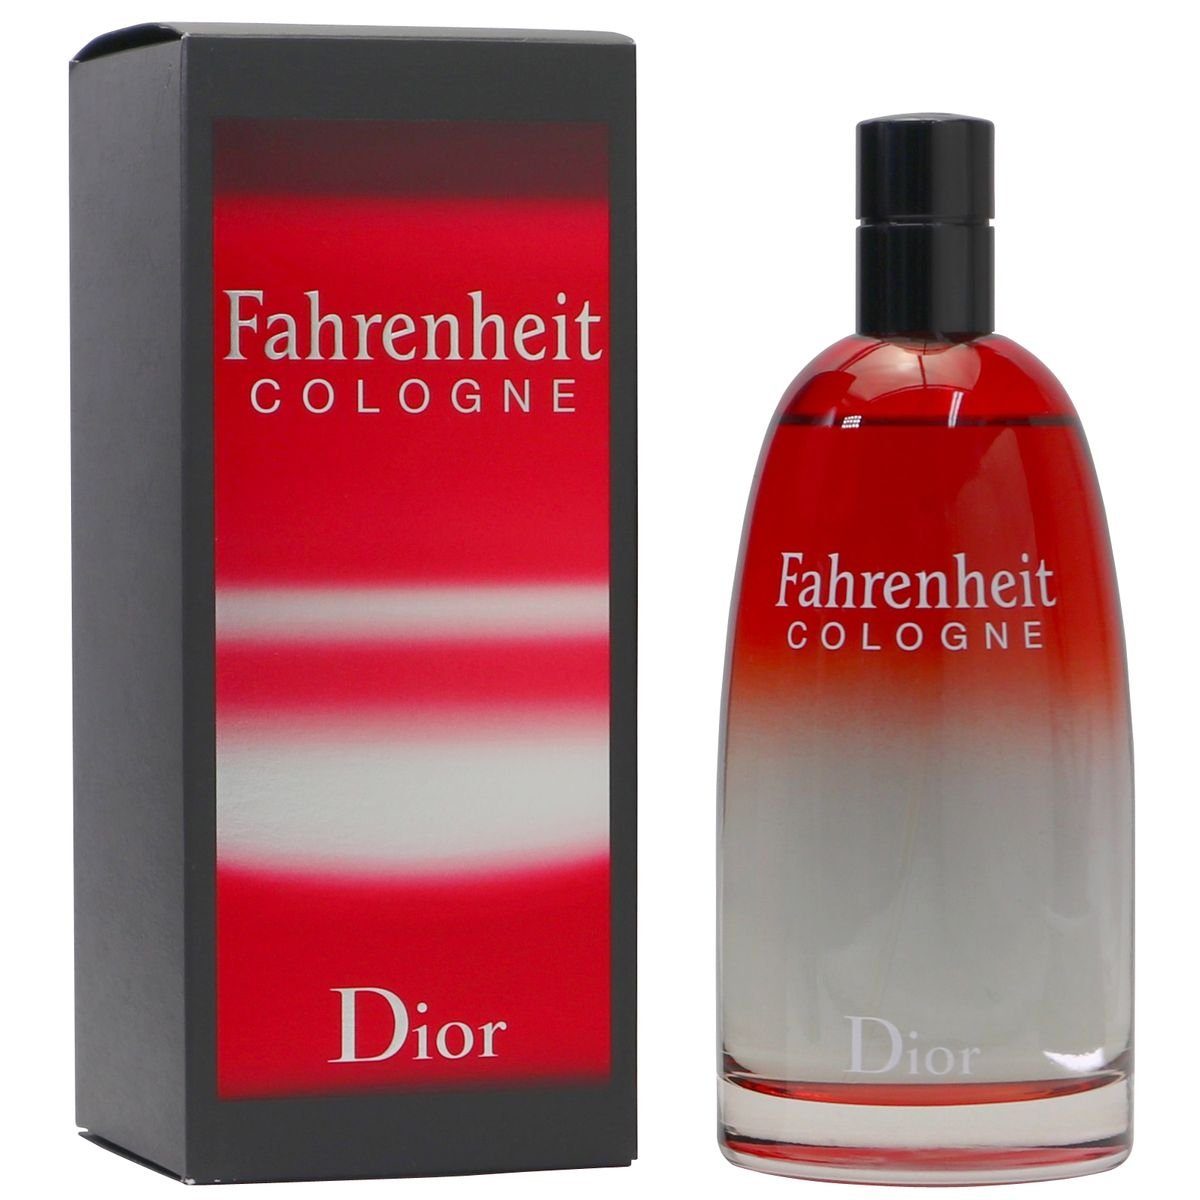 Dior Eau de Cologne Christian Dior 200 ml Spray Fahrenheit Cologne